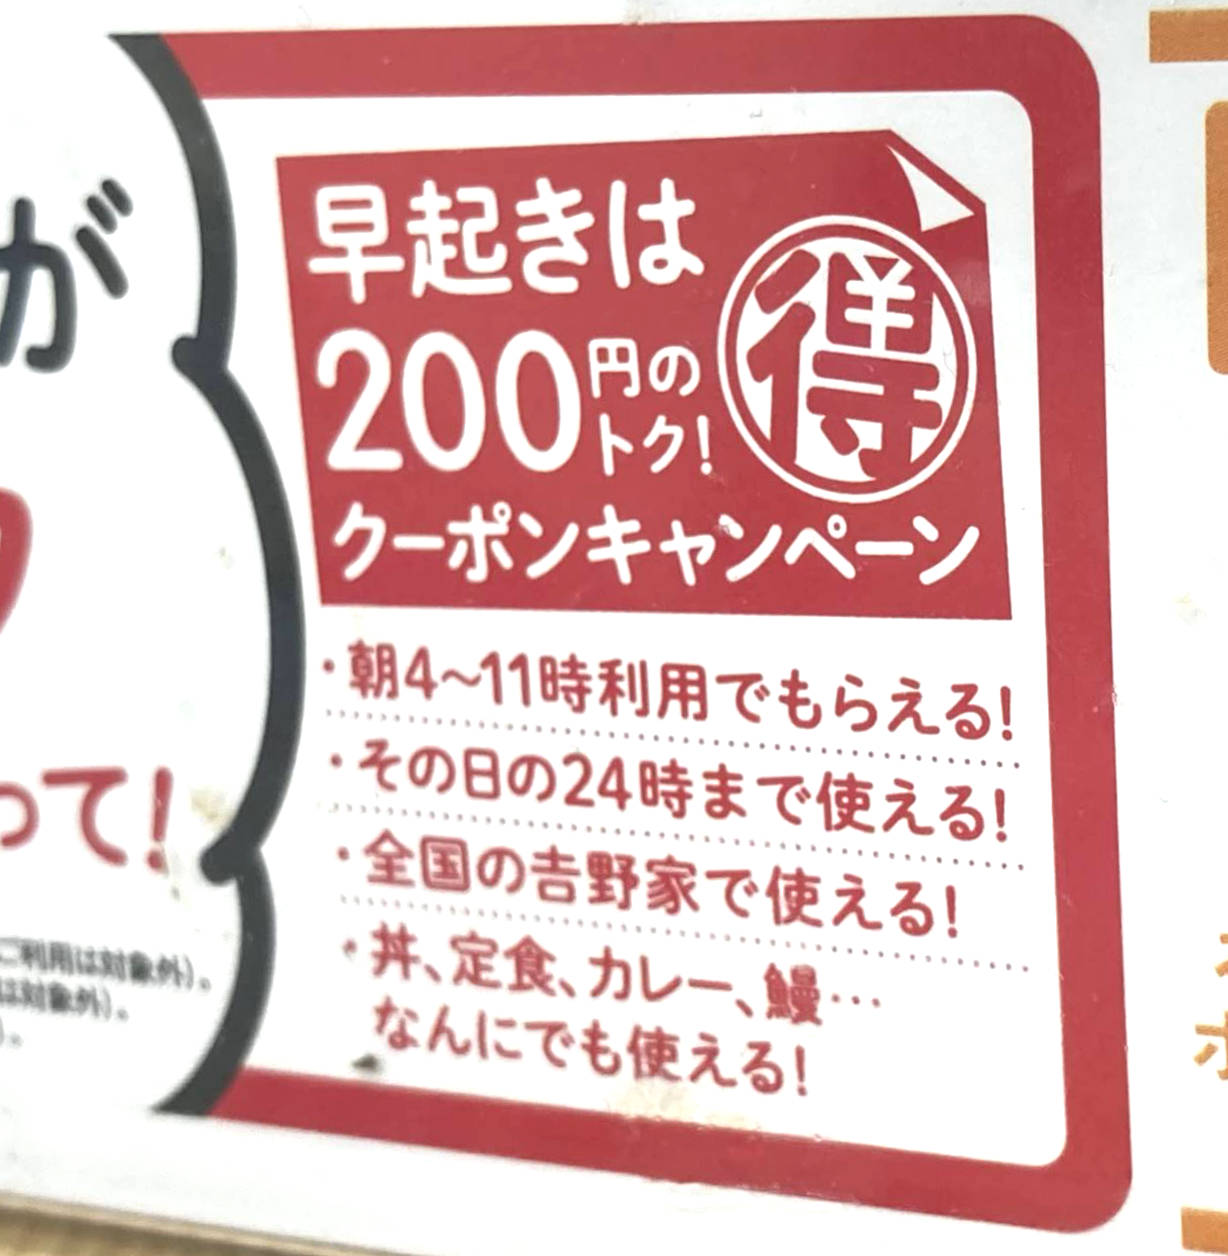 早起きは200円のトククーポンキャンペーン